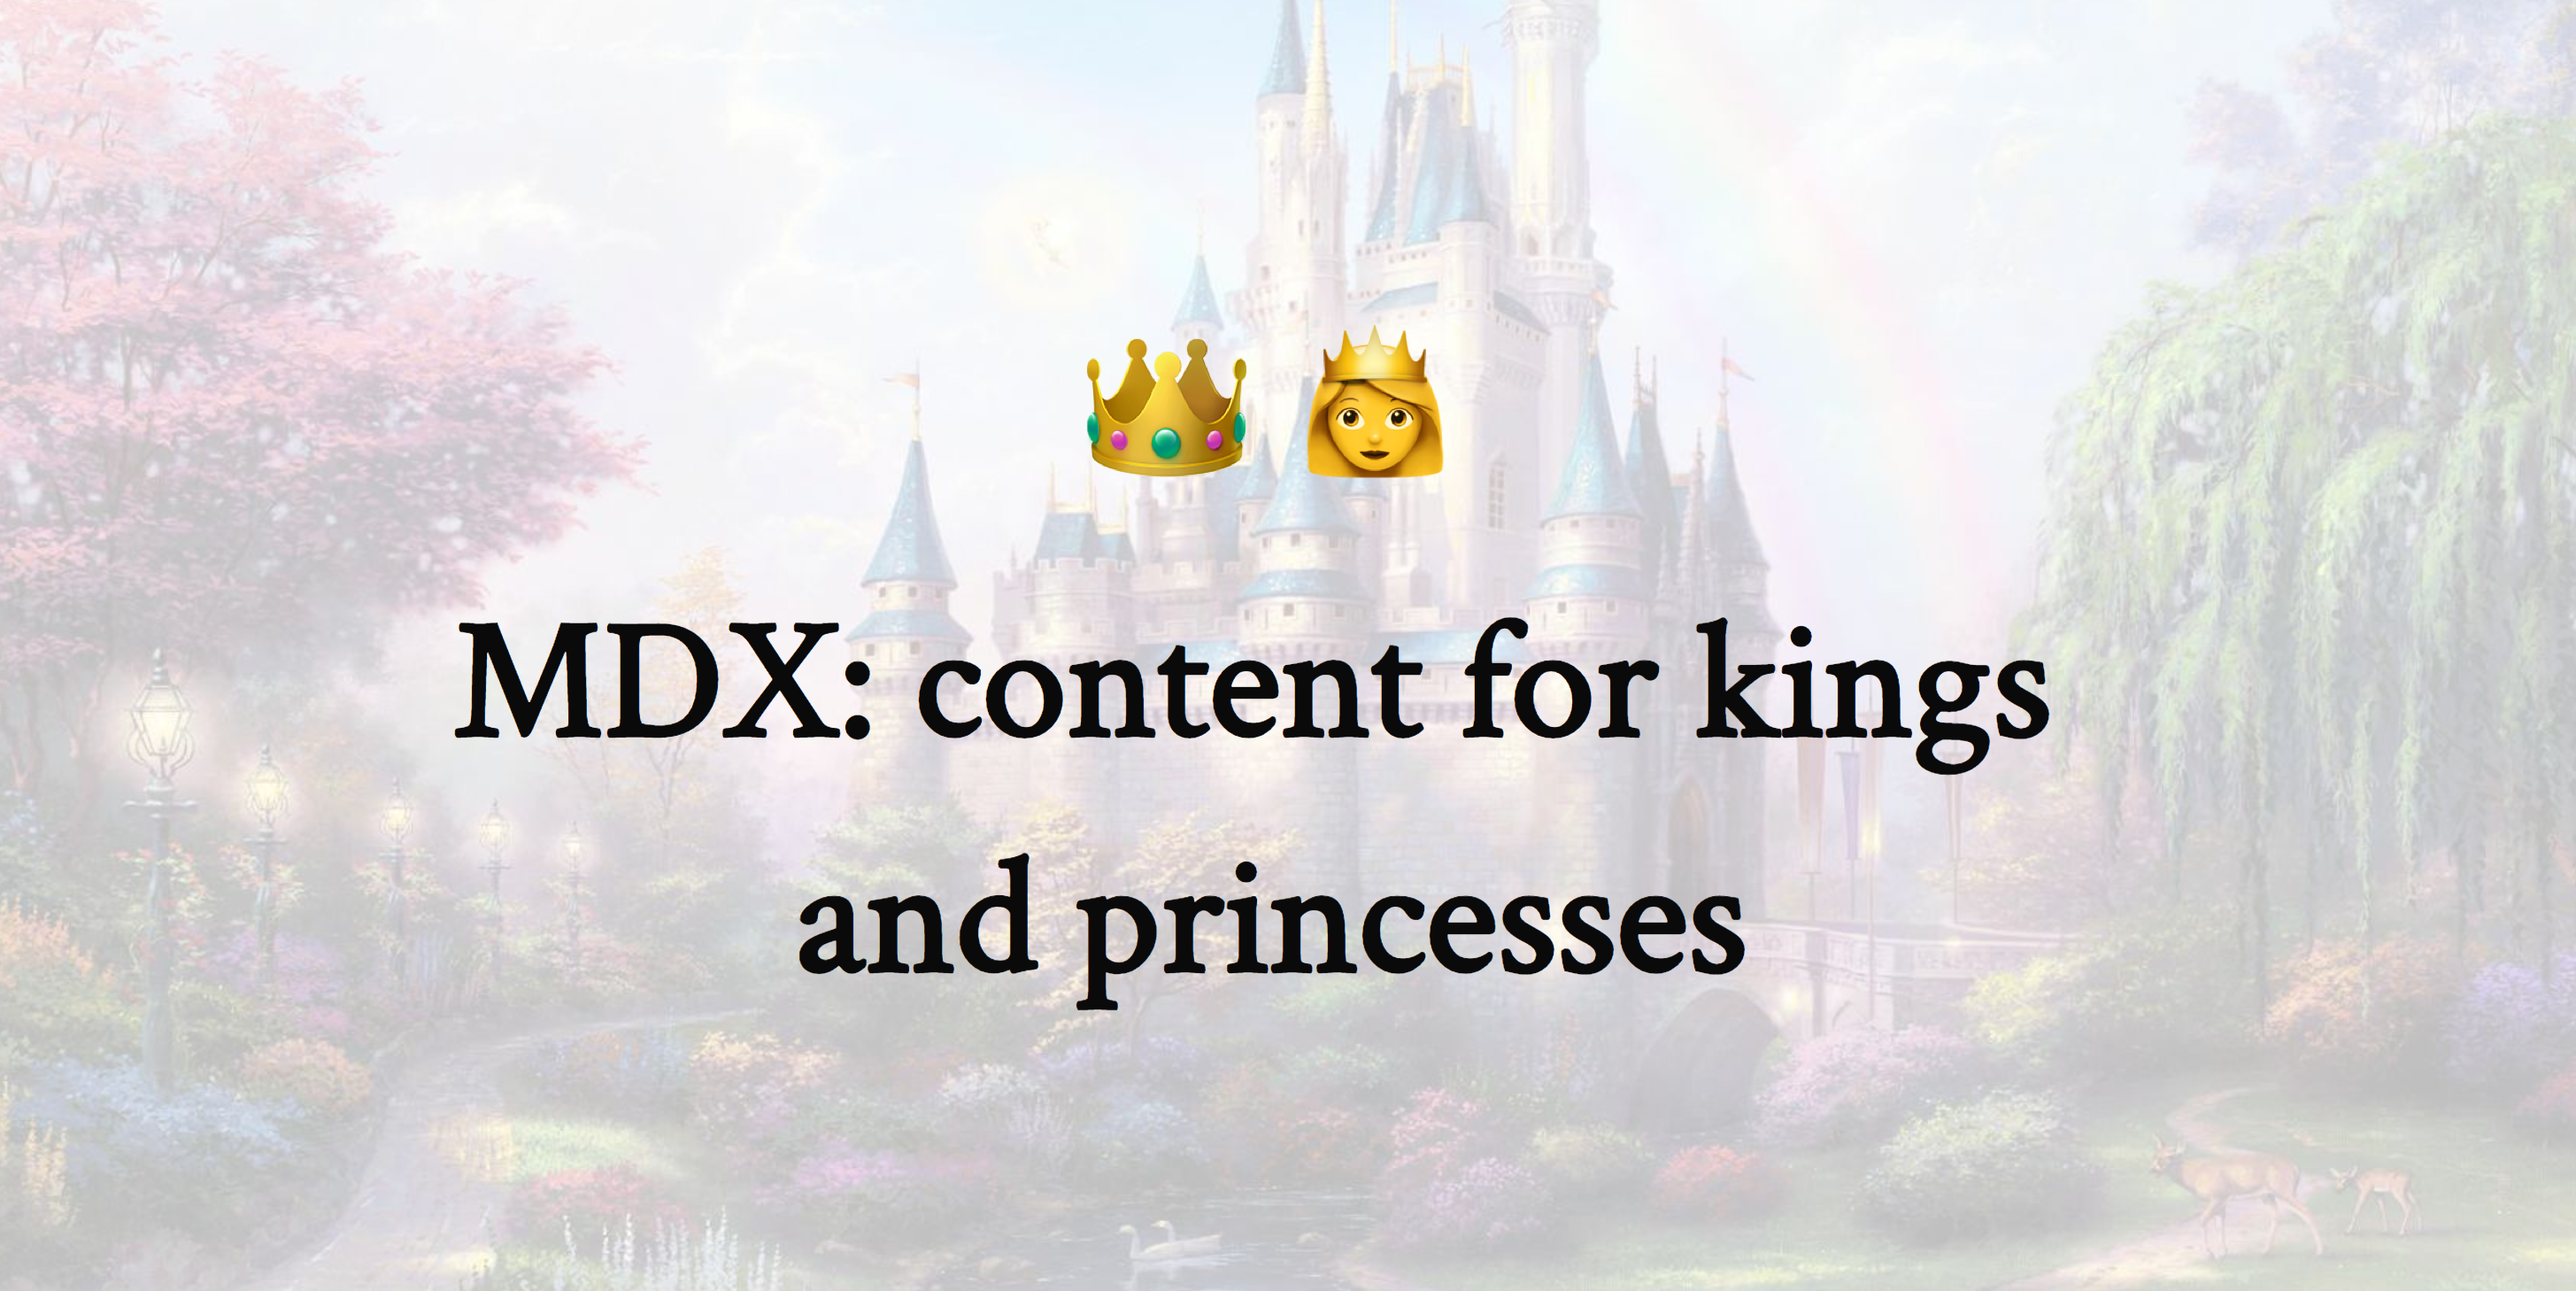 MDX fairy tale slide